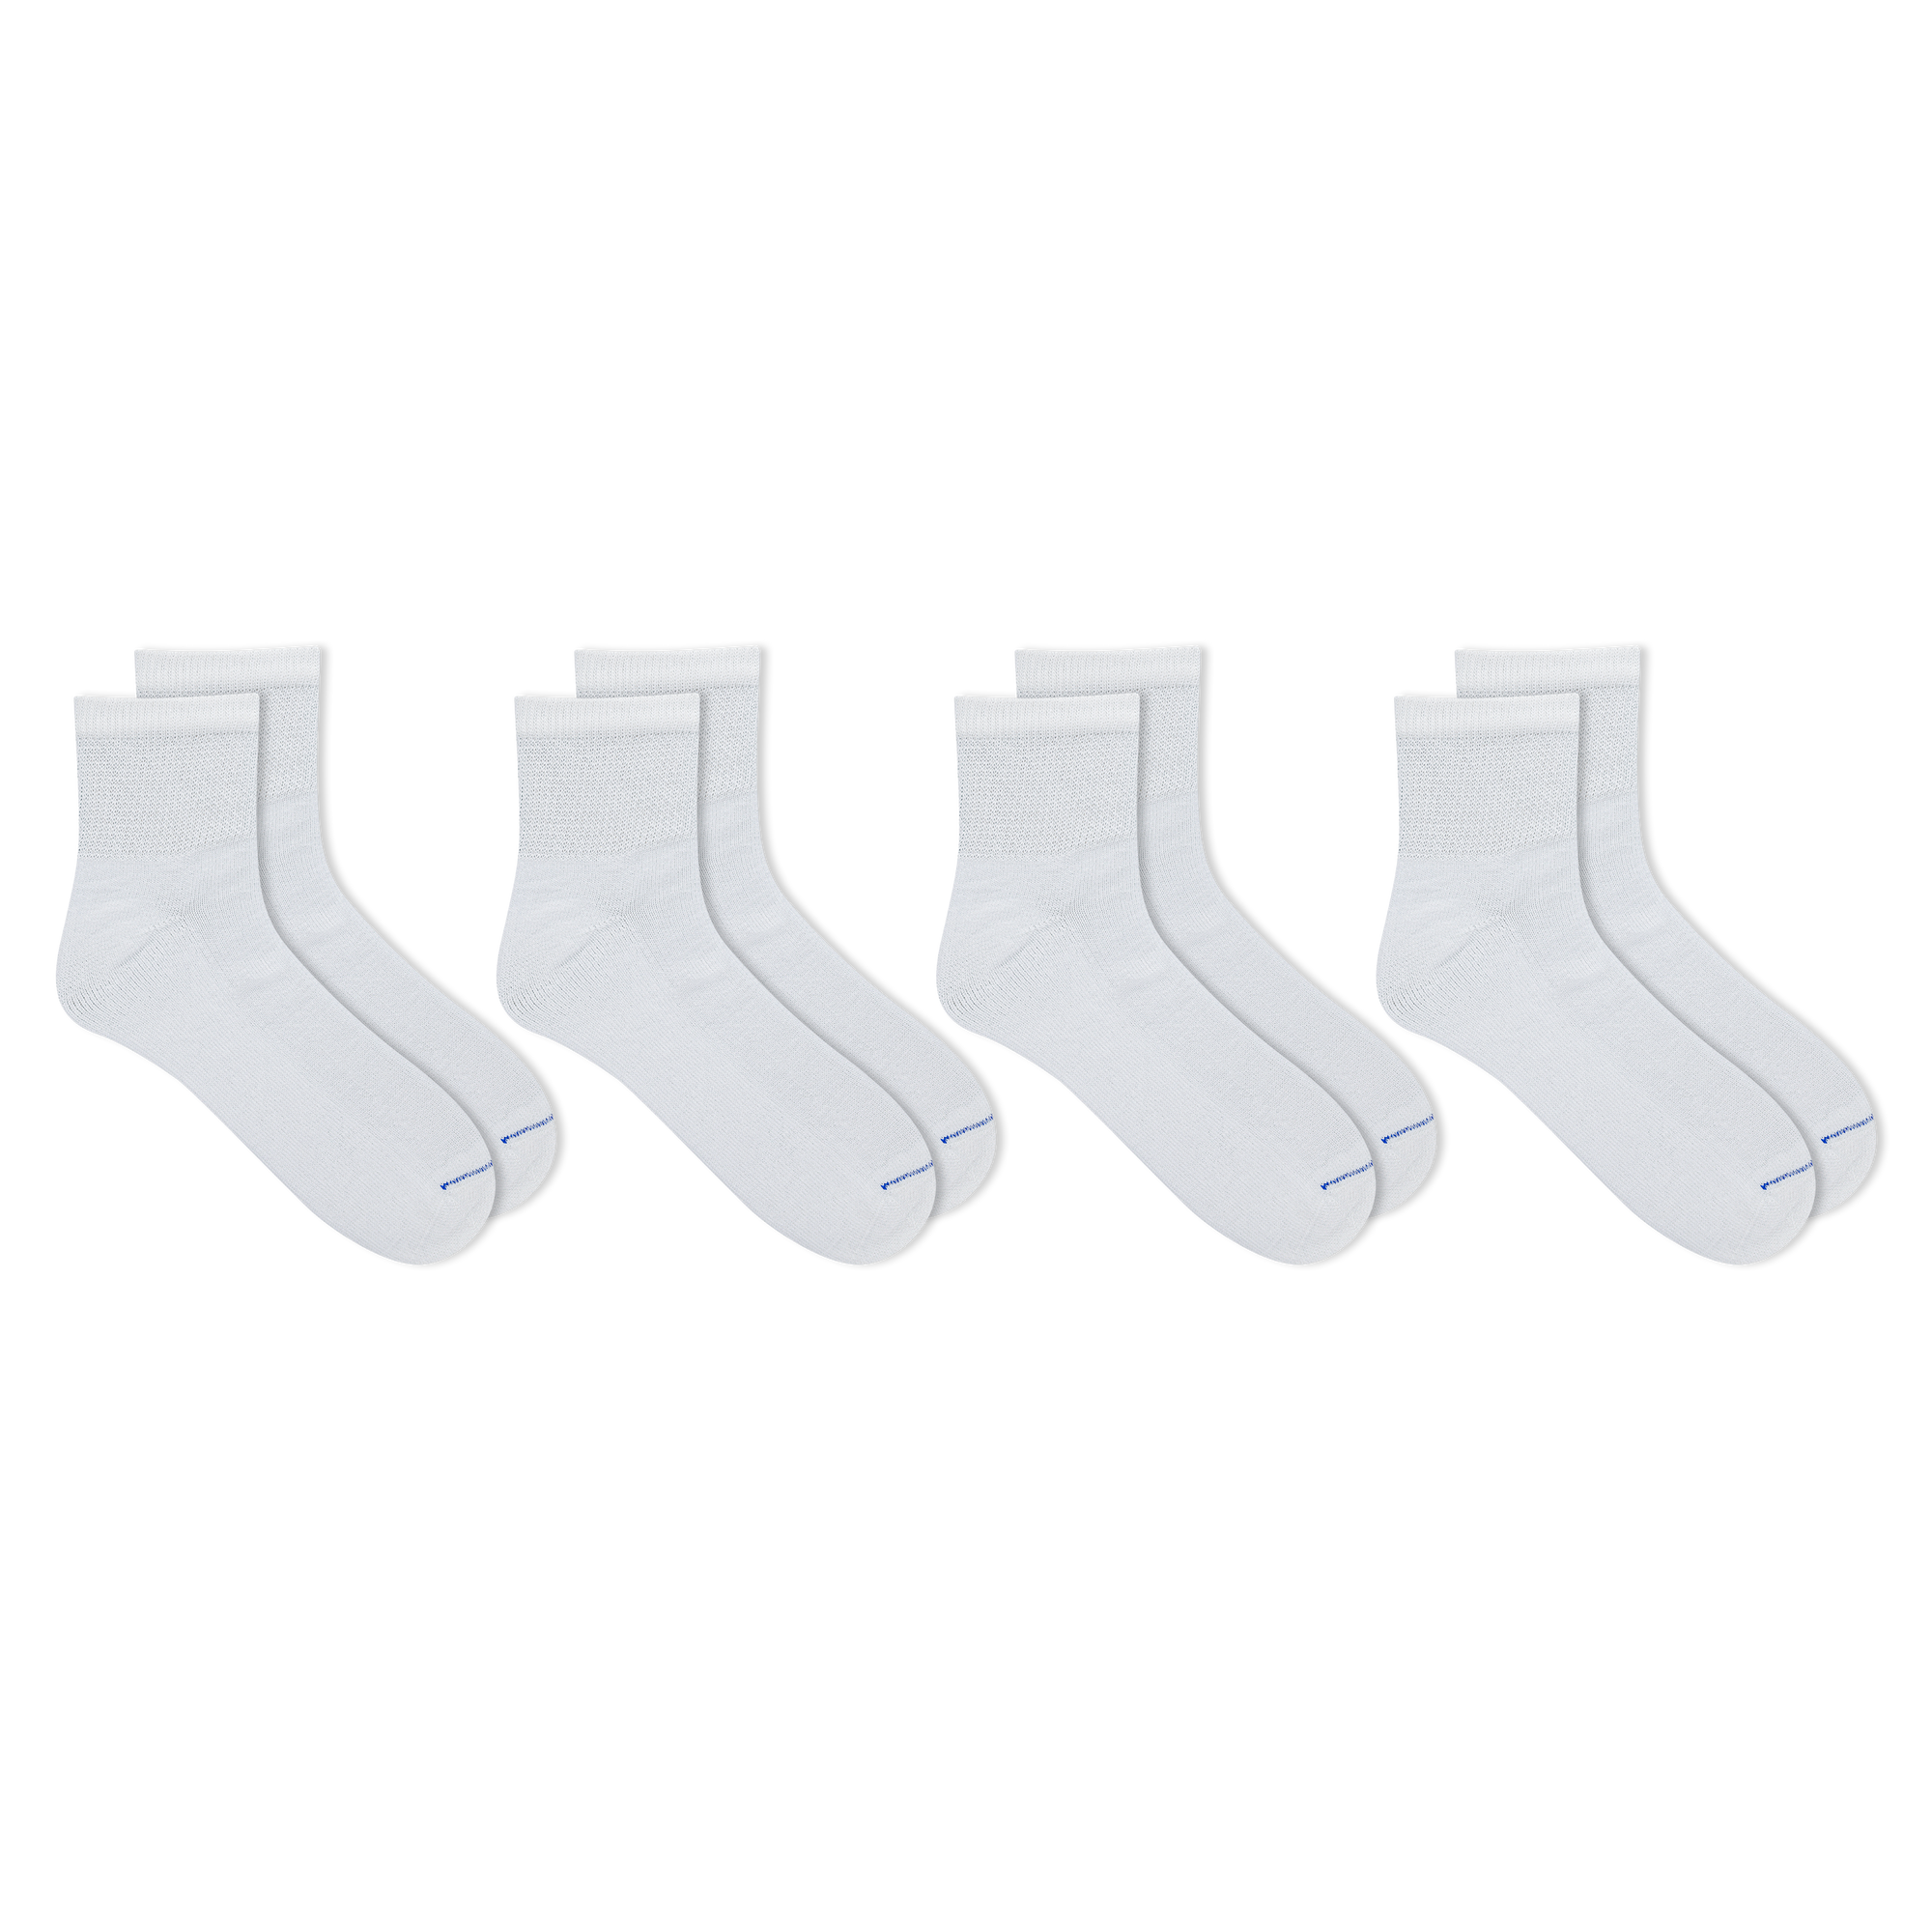 Boody | Men's Quarter Crew Sock in Black | Size I 6-11